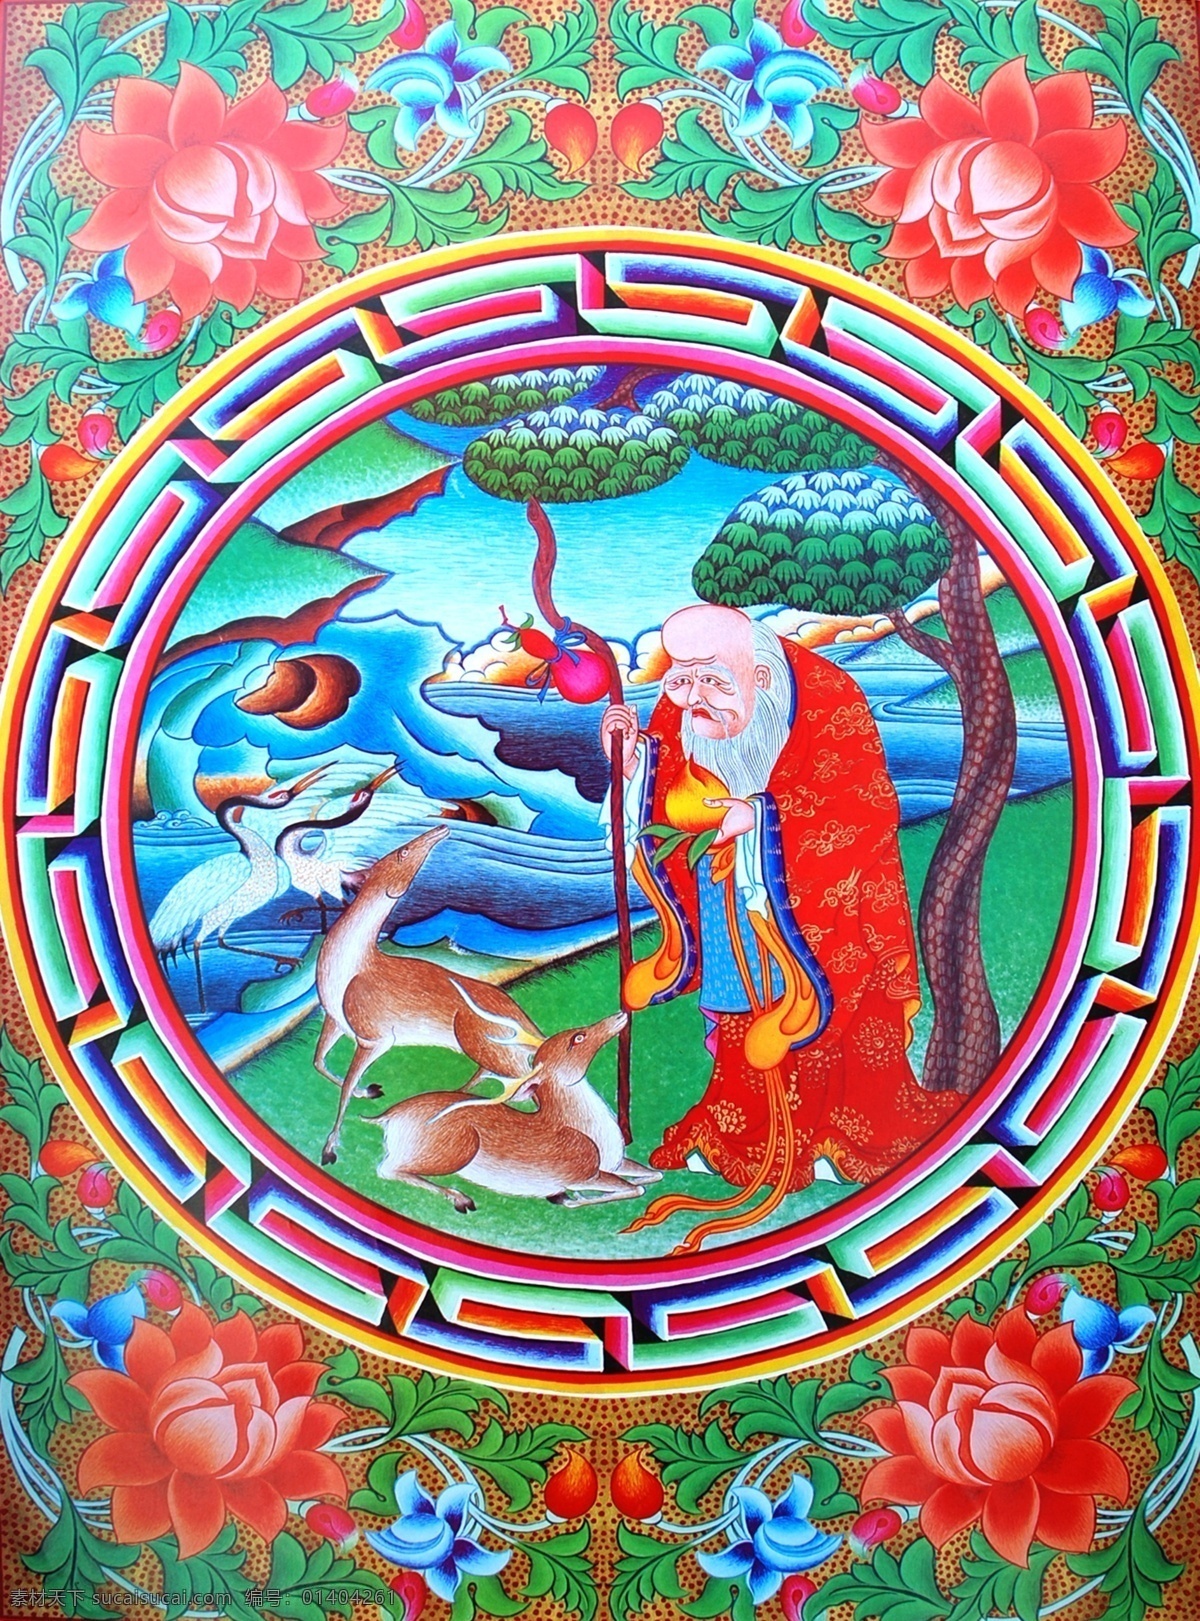 无框画 佛教 手绘 墙画 壁画 卧室画 绘画 吉祥 图案 藏族 宗教 和平 平安 宗教设计 藏族传统图案 六 长寿 老人 绘画书法 文化艺术